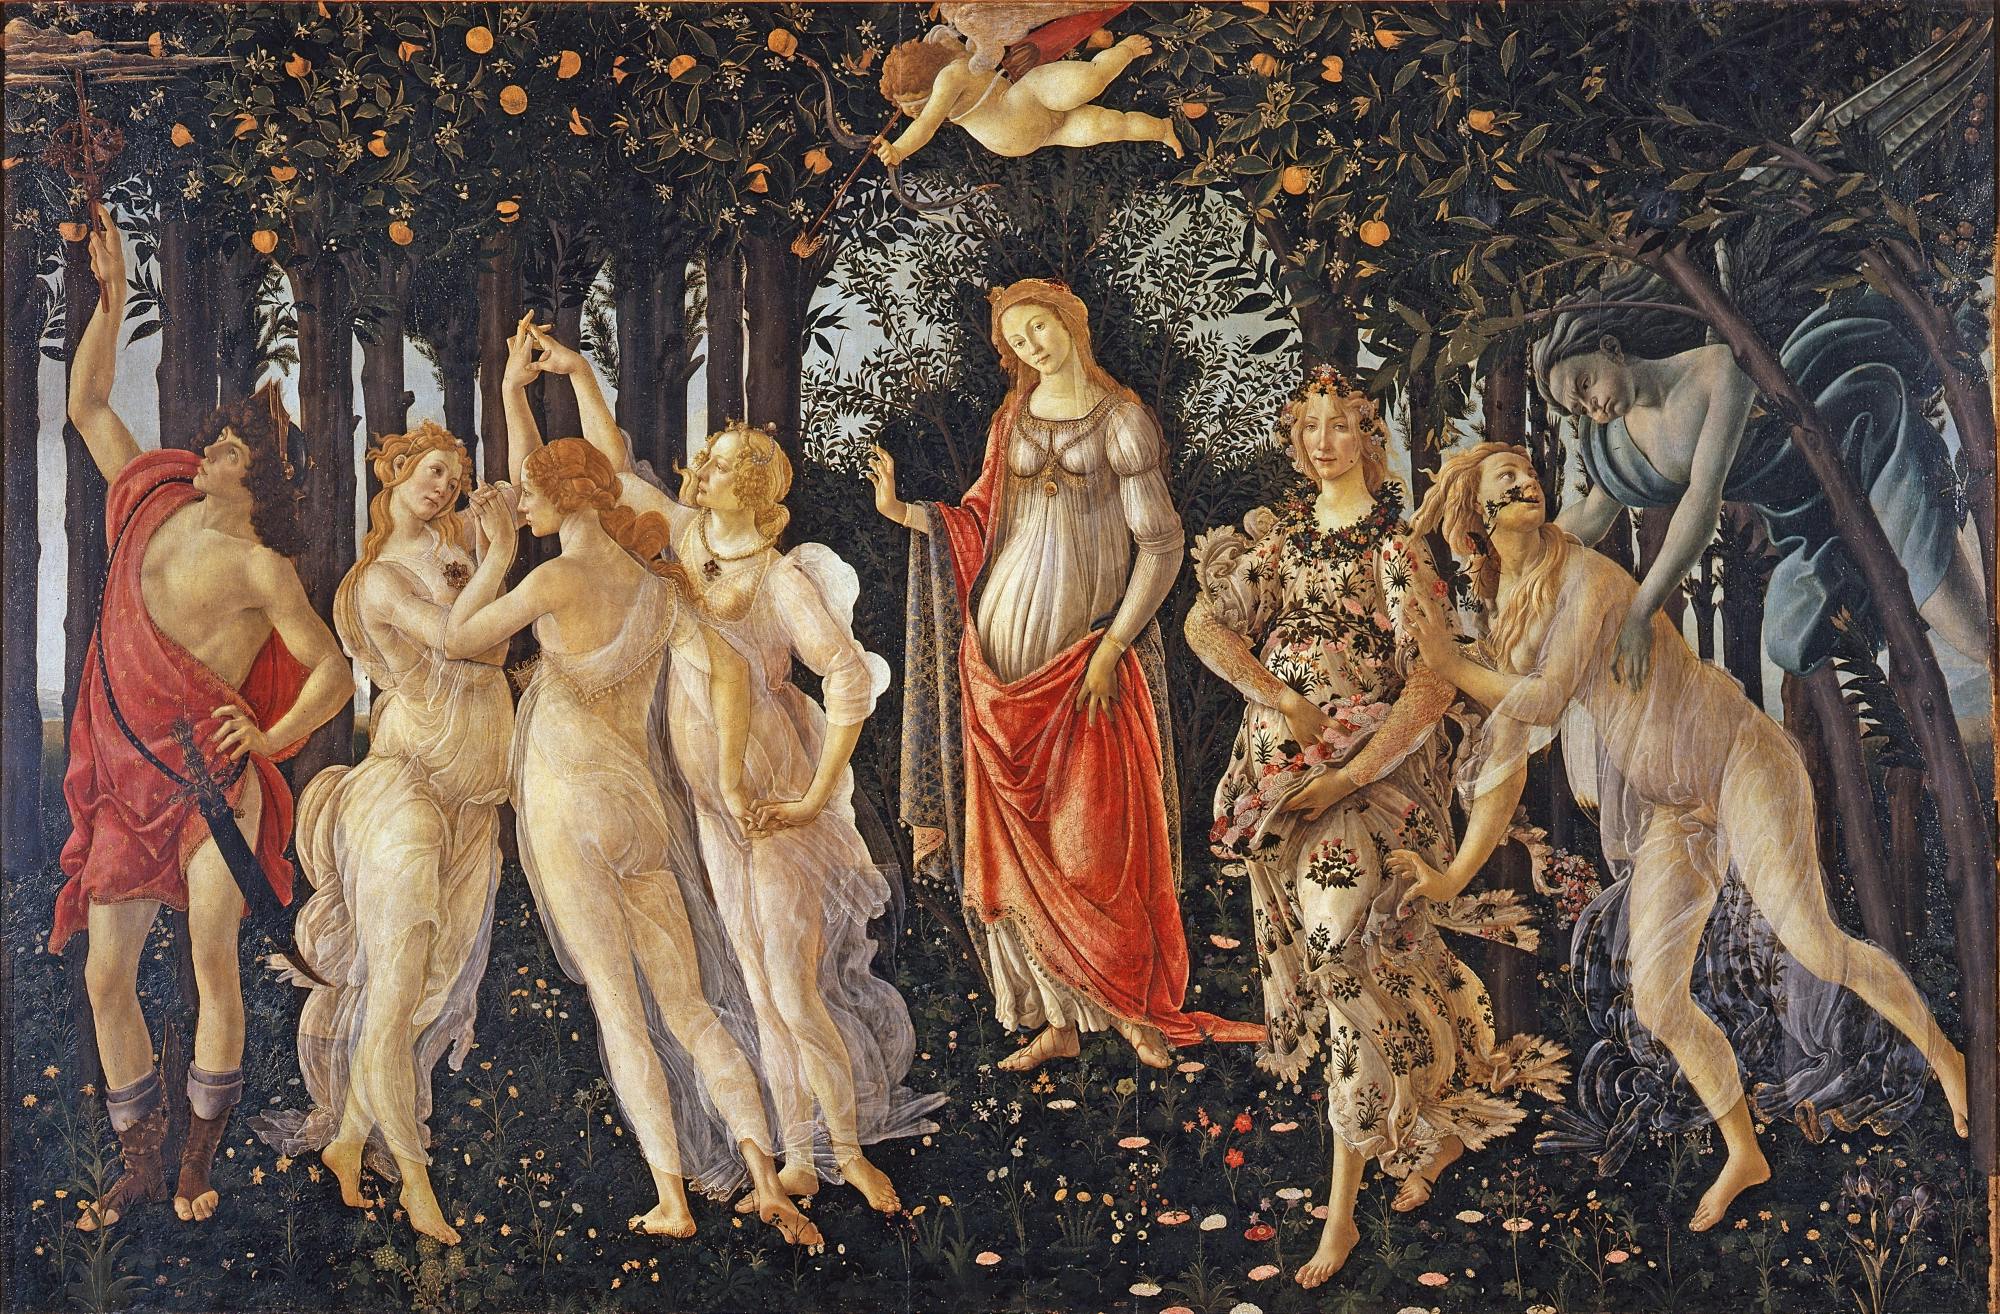 Tour en grupos pequeños de la Galería de los Uffizi con entradas sin colas